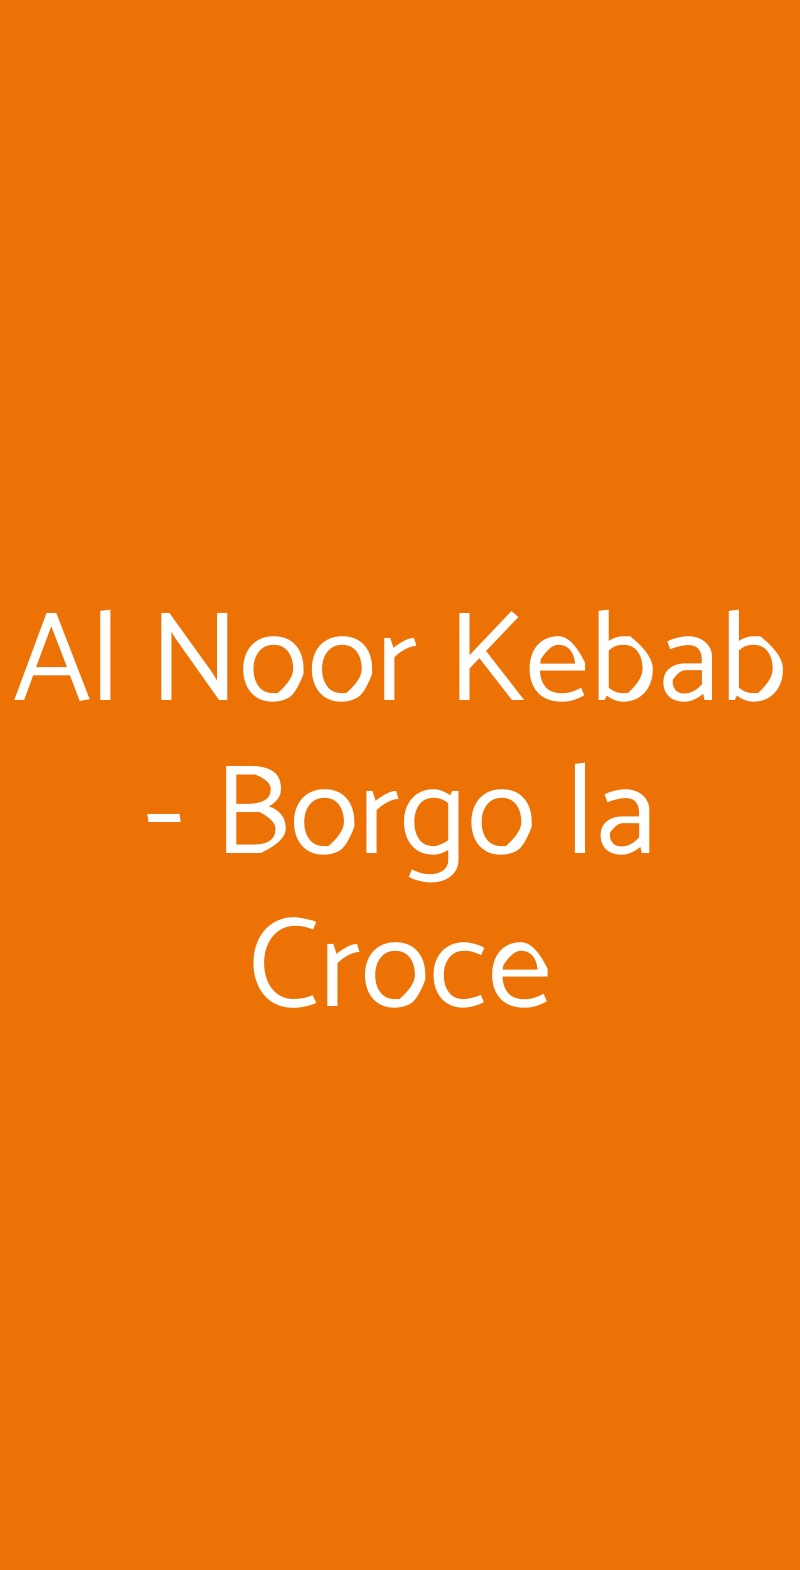 Al Noor Kebab - Borgo la Croce Firenze menù 1 pagina